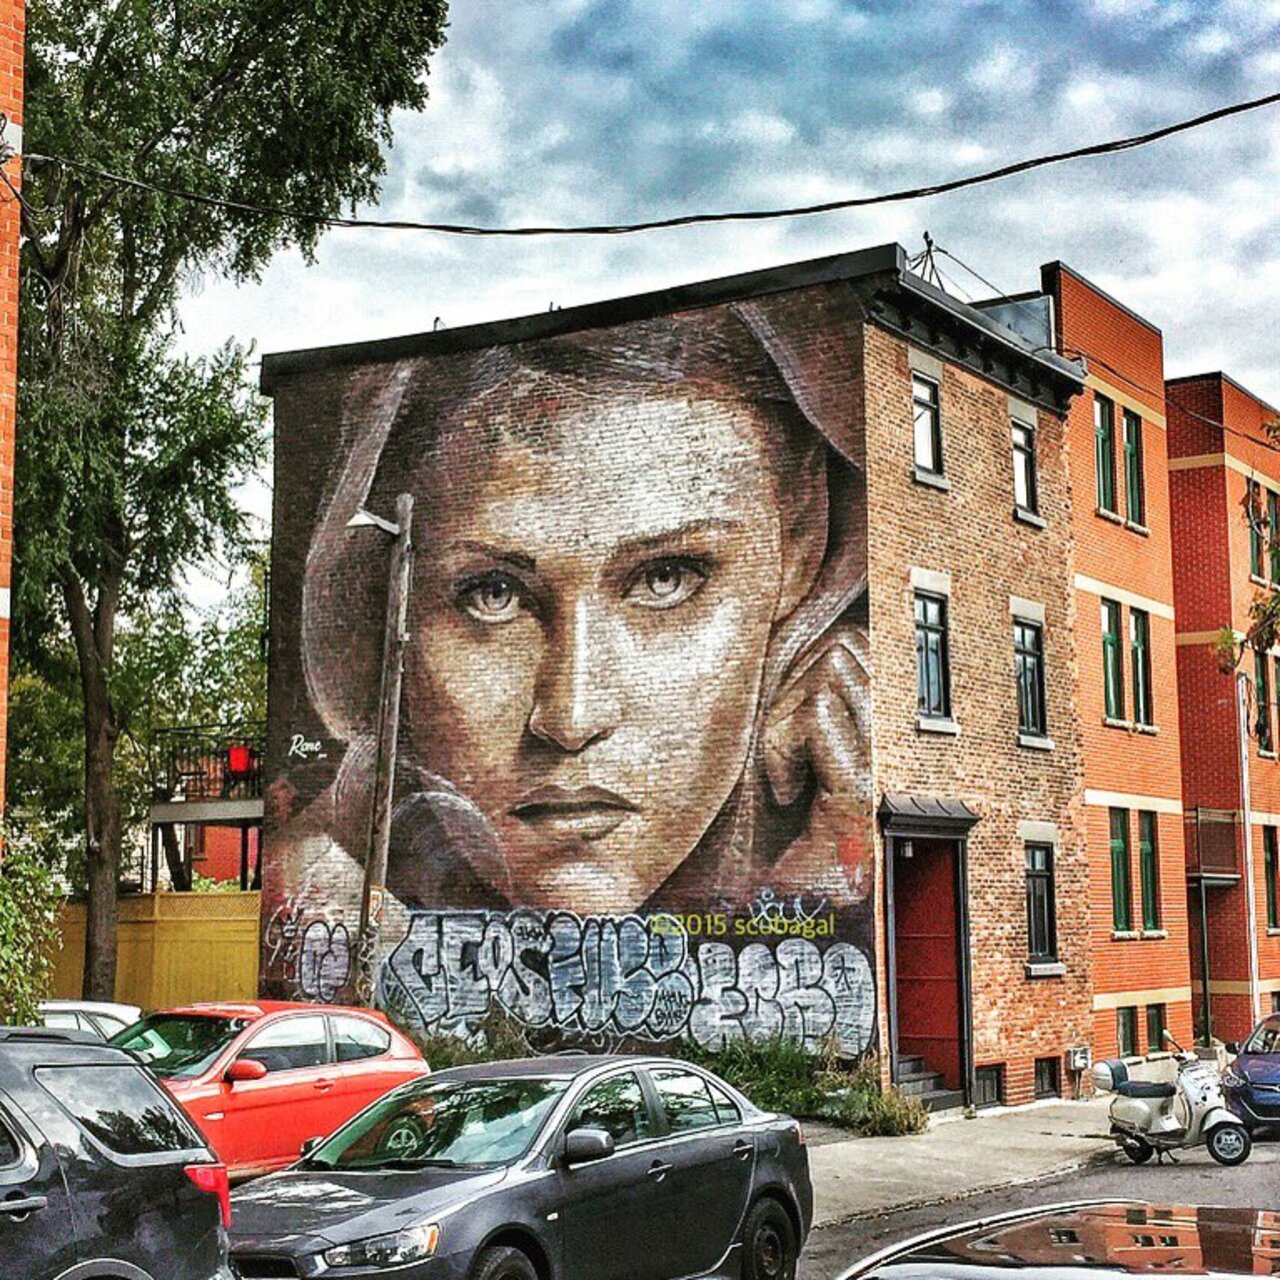 ShaniaSuperlove: The Walkflower | #Montreal #art #graffiti #streetart #streetphotography https://t.co/Tzvpn1r0Ea https://goo.gl/t4fpx2